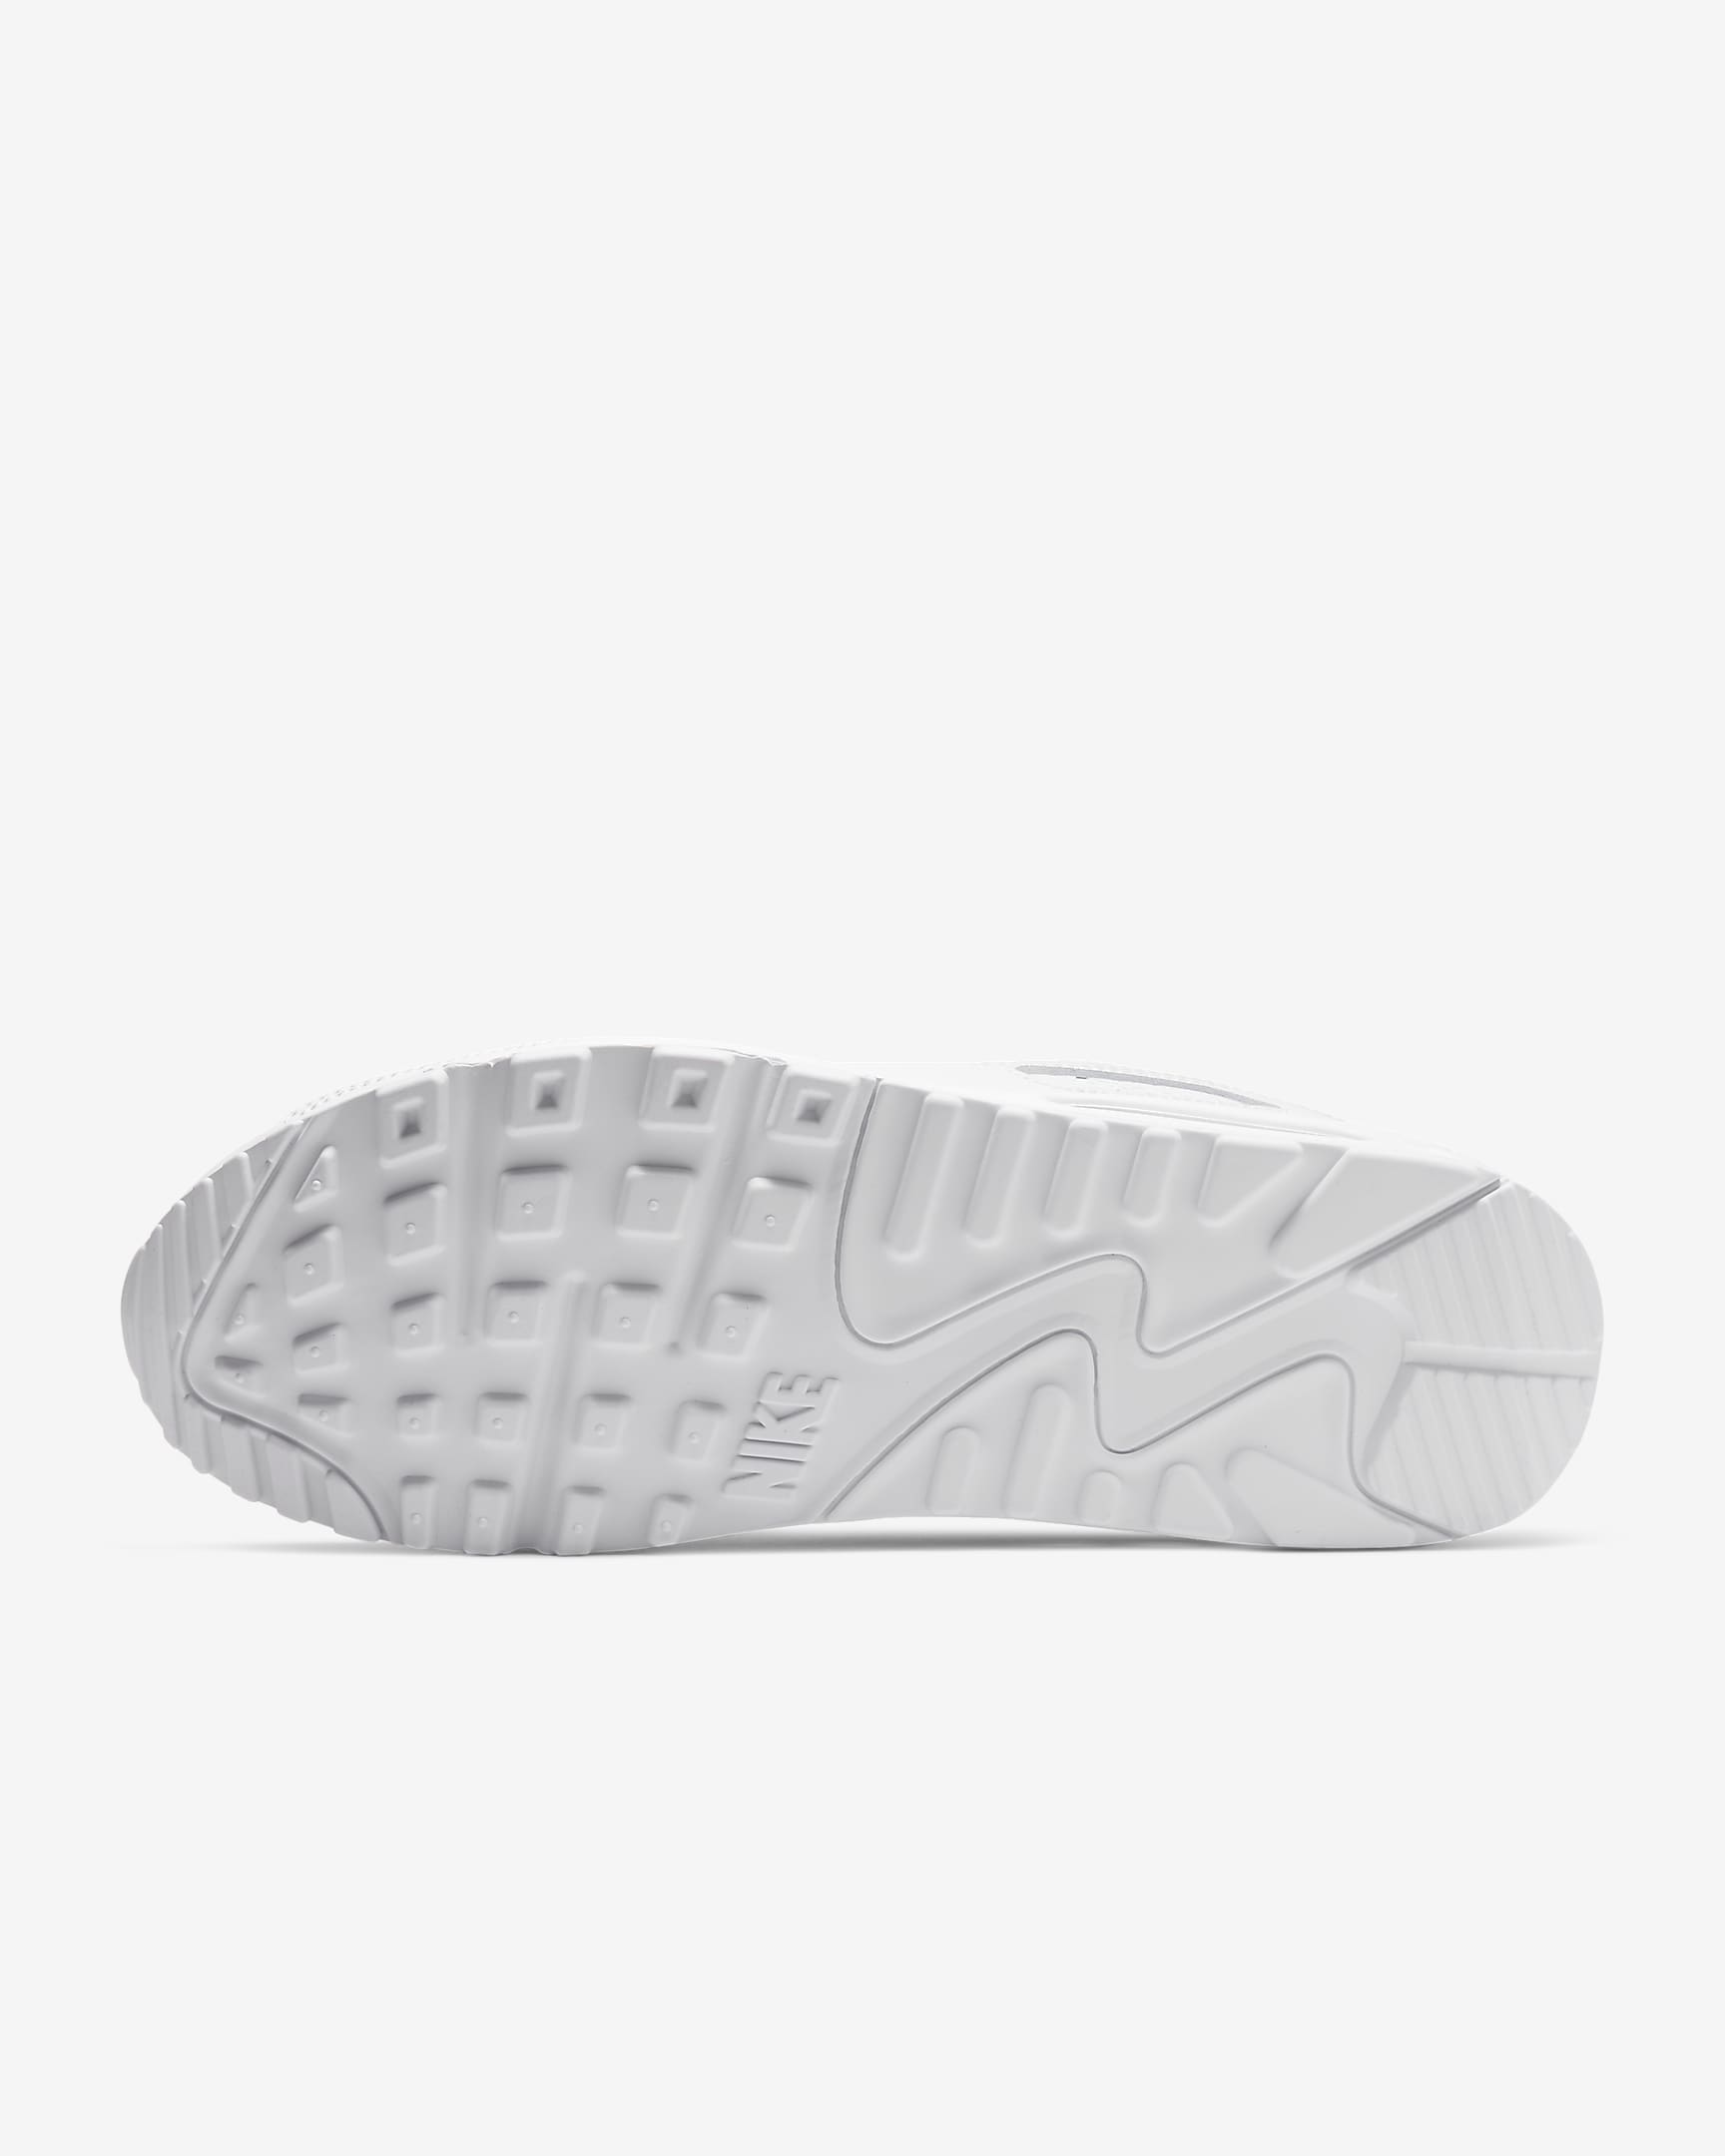 Pánská bota Nike Air Max 90 - Bílá/Bílá/Wolf Grey/Bílá